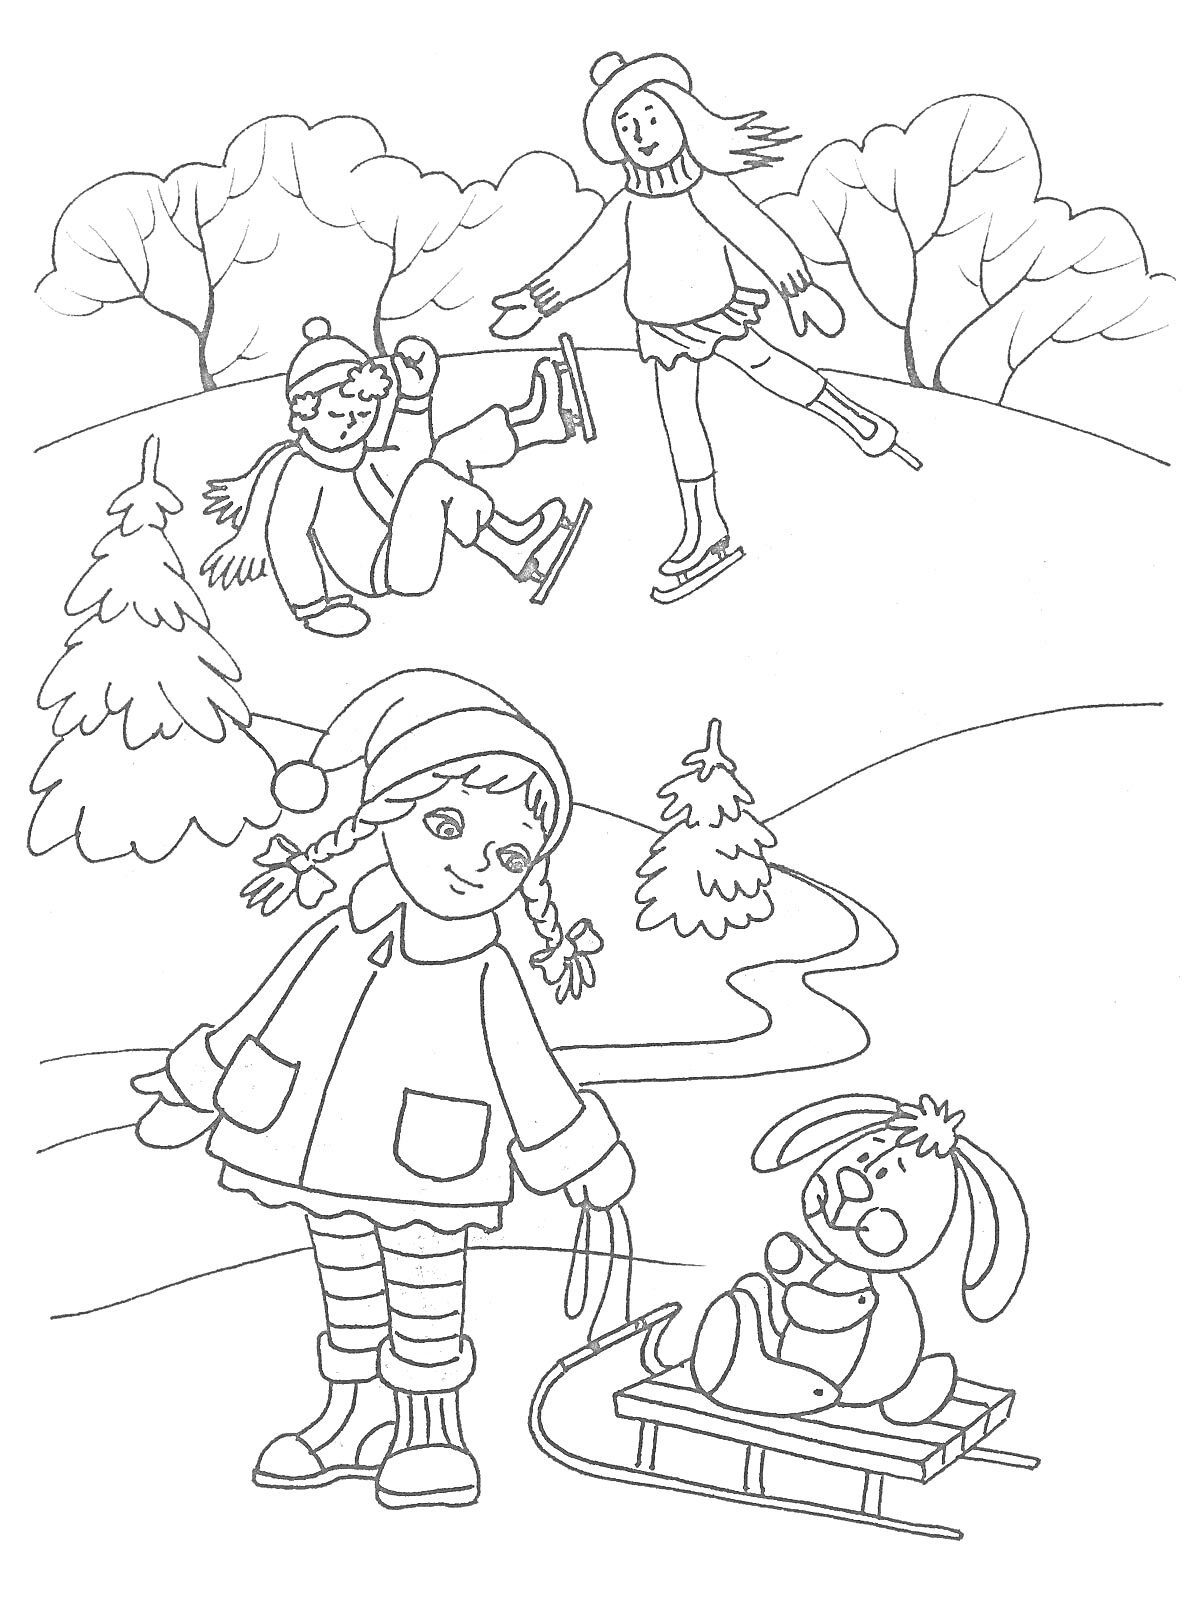 Дети катаются на коньках и санках зимой в лесу. На переднем плане девочка тащит санки с игрушечным зайцем, на заднем плане двое детей катаются на коньках. Вокруг заснеженные деревья и кусты, снежный пейзаж.